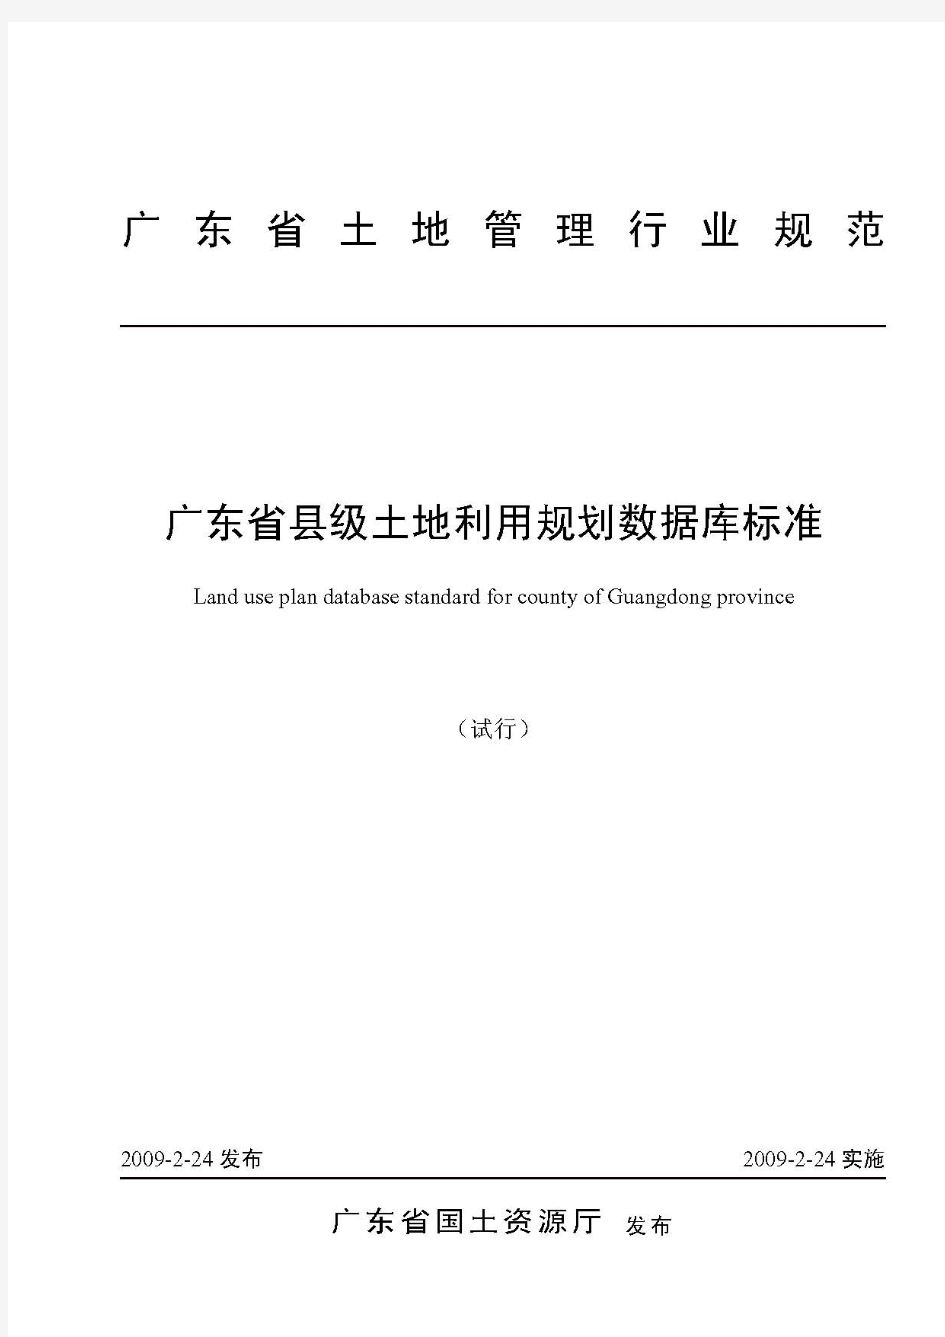 广东省县级土地利用规划数据库标准(试行)